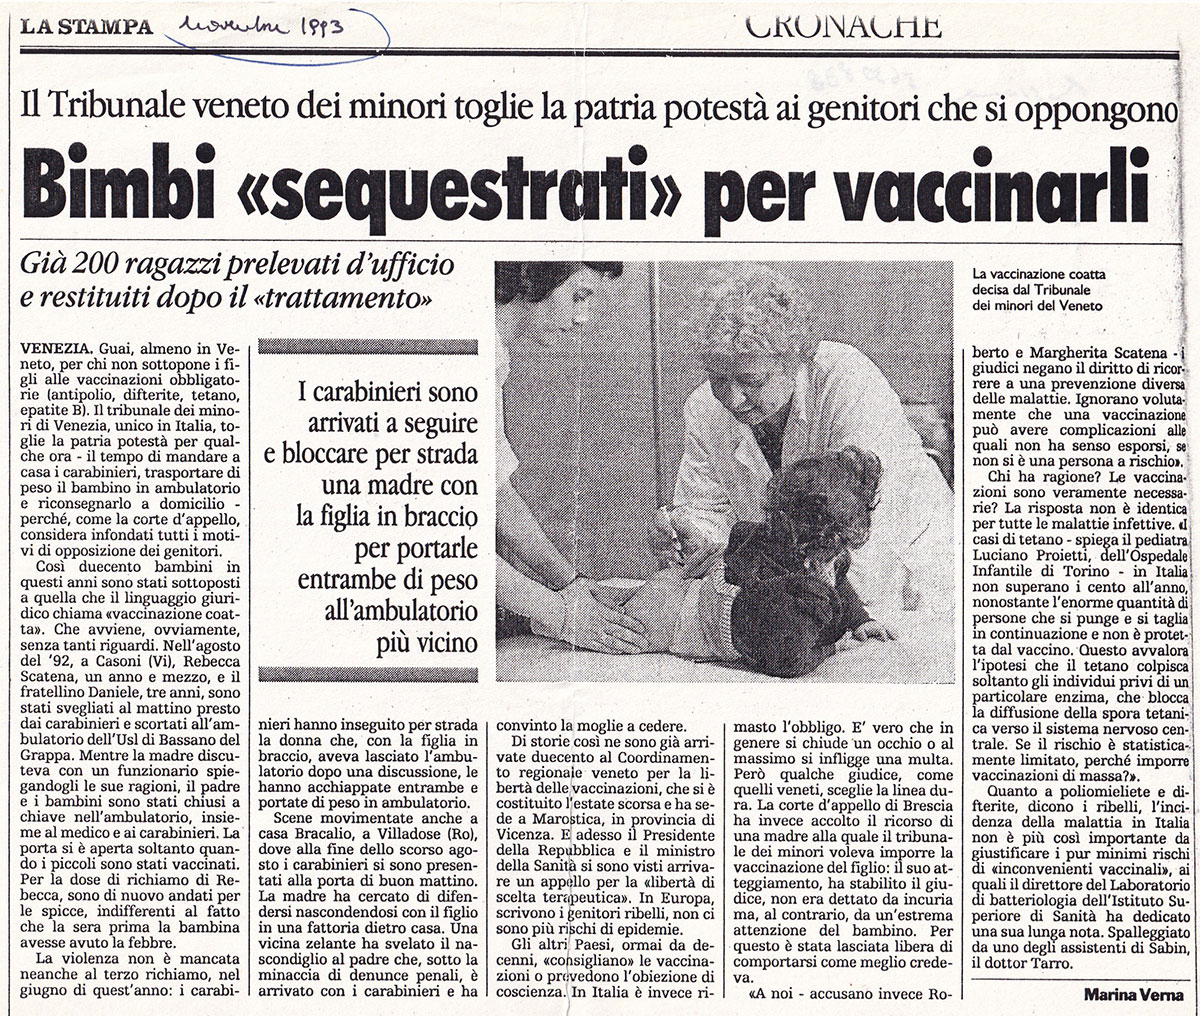 Otroke »zagrabili« za cepljenje. La Stampa, november 1993